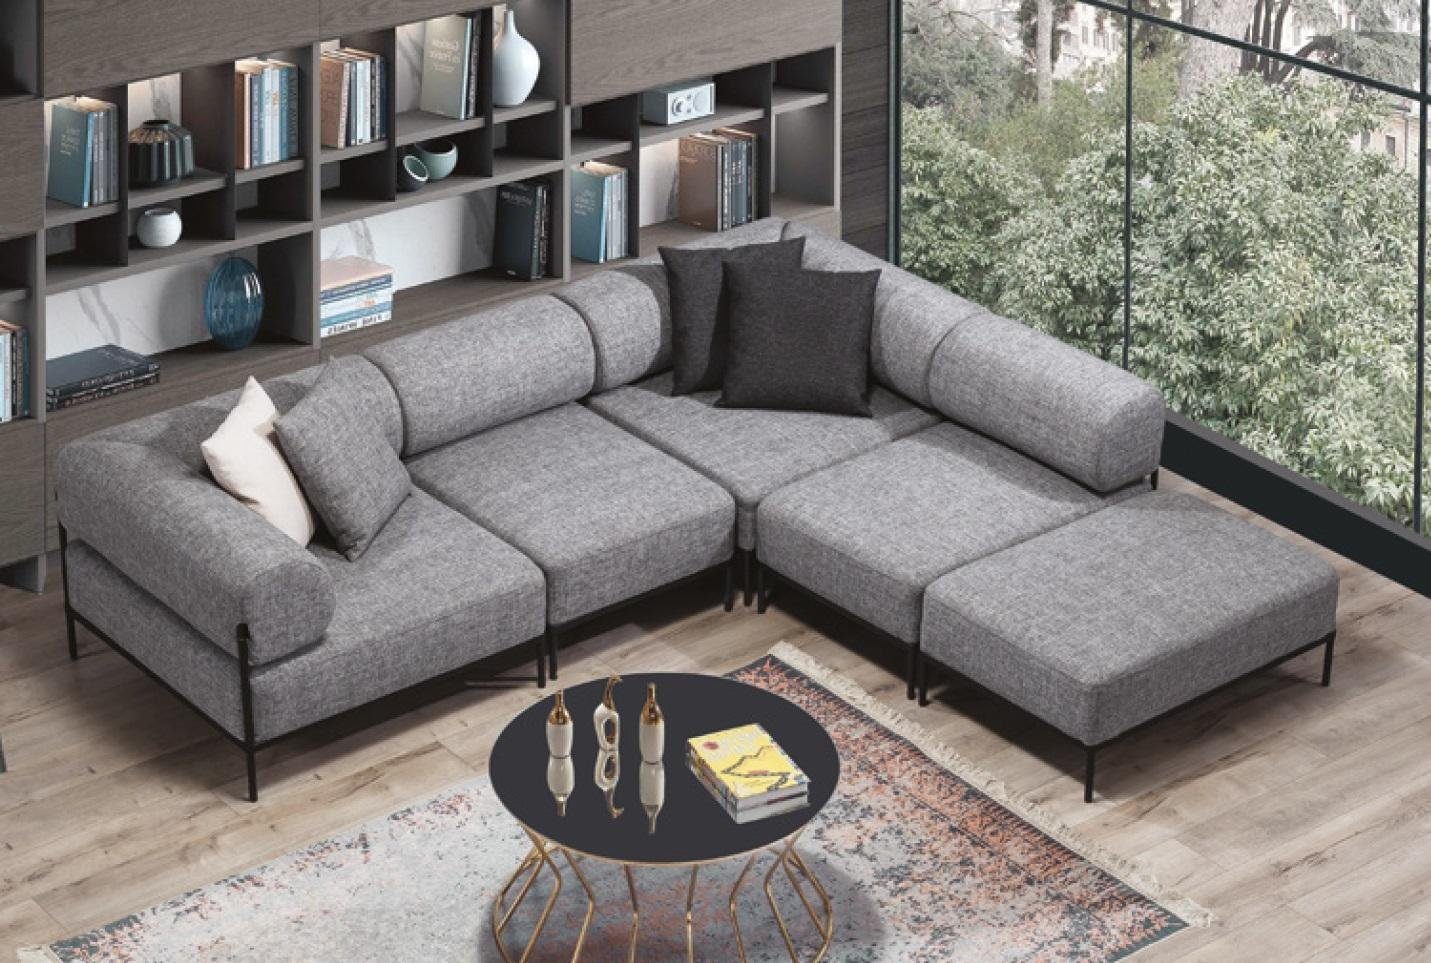 JVmoebel Ecksofa, Ecksofa L Form Couch Moderne Wohnlandschaft Möbel Sofa  Holz